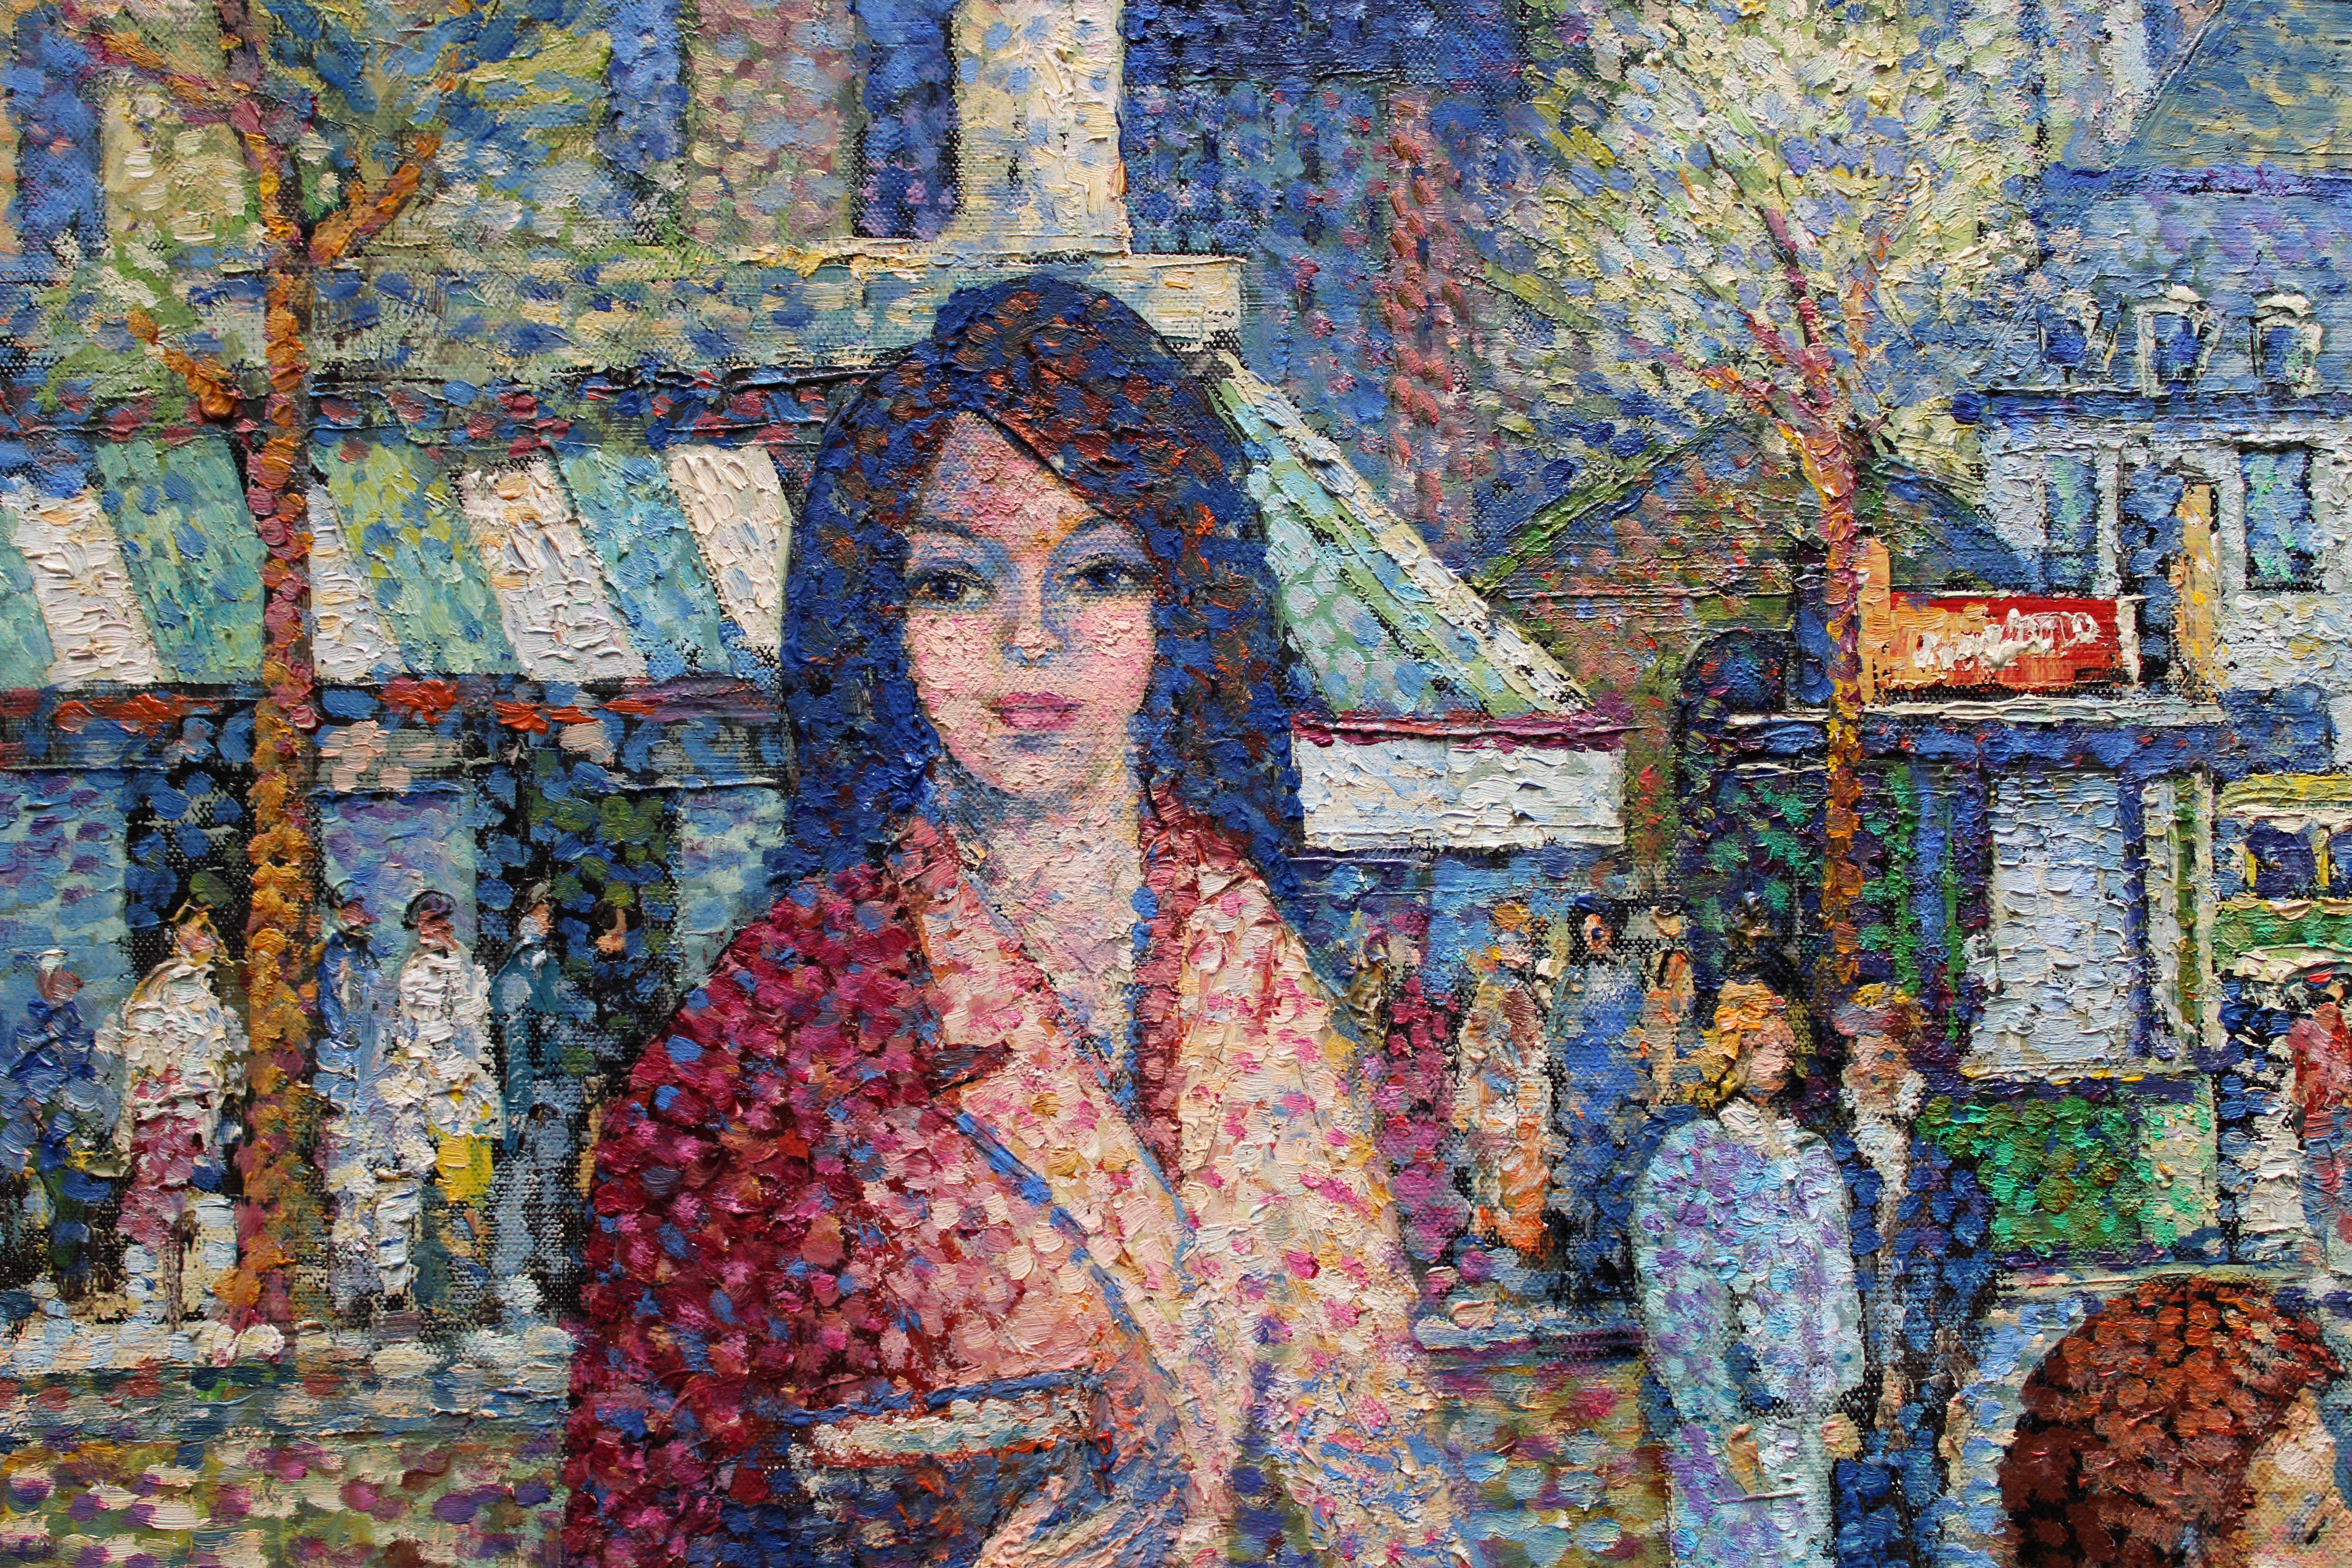 Saint-Germain-des-Prés. 1946. Oil on canvas, 73x92 cm - Impressionist Painting by Lucien Neuquelman 